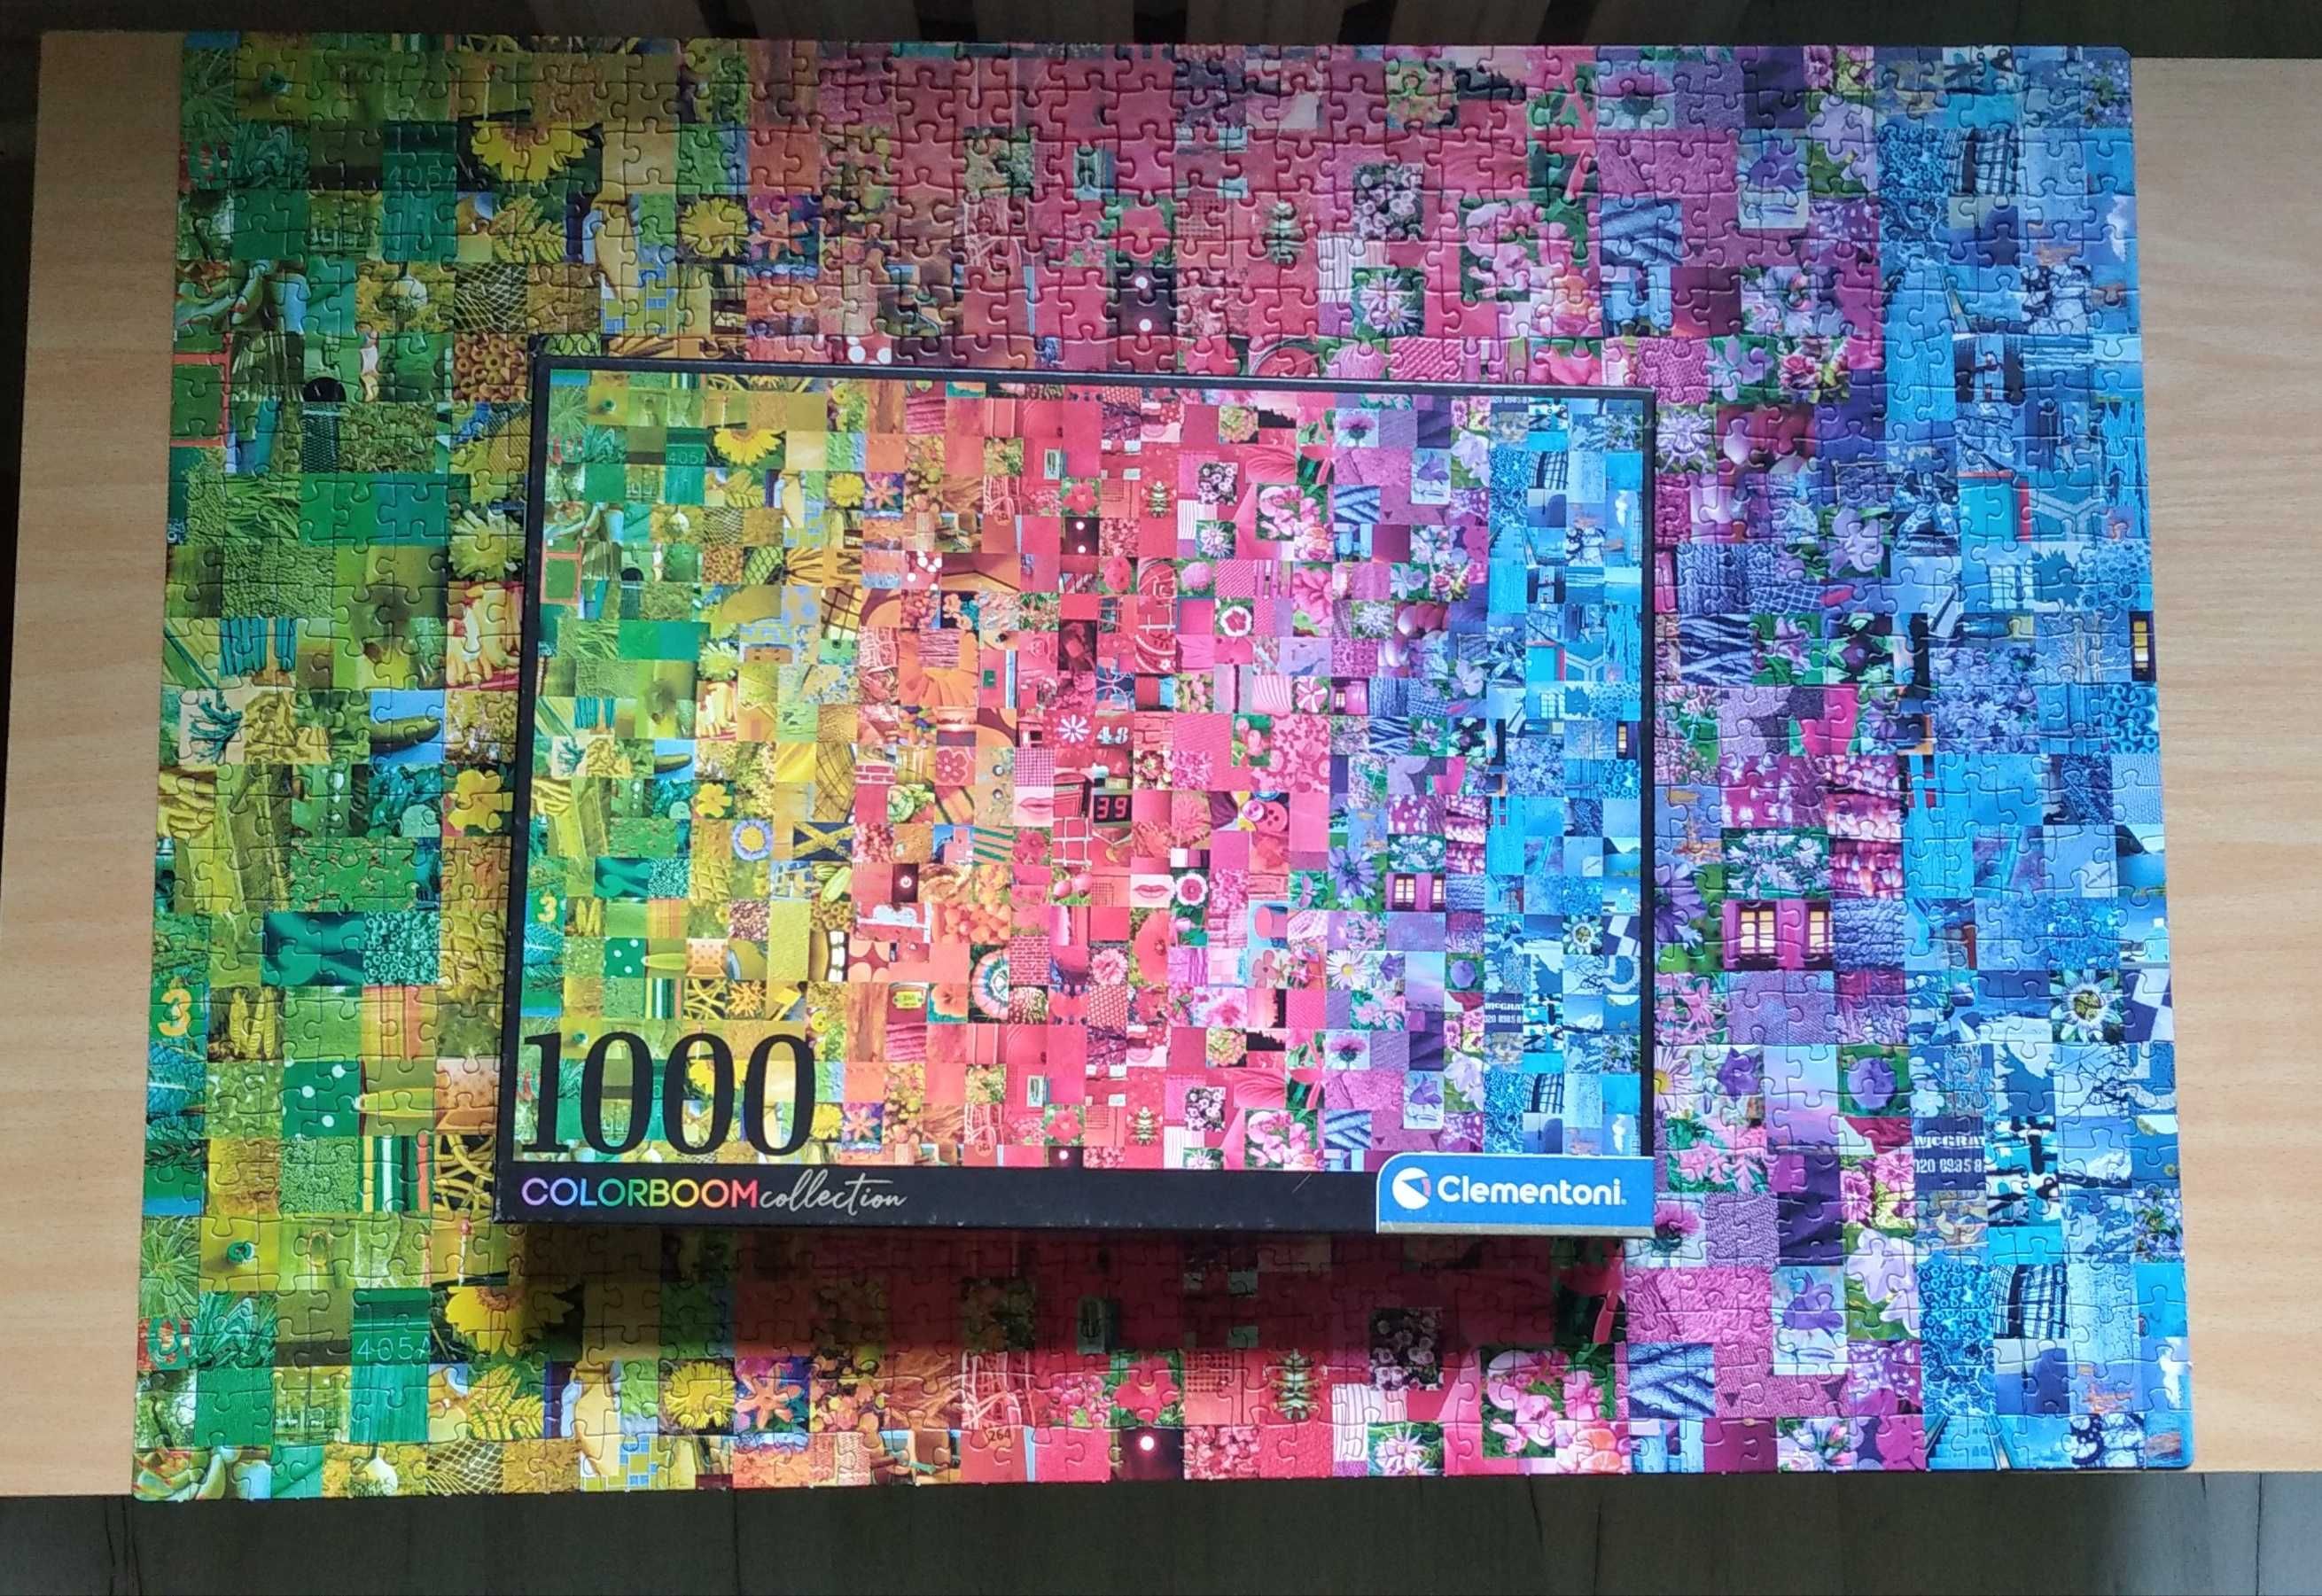 Puzzle Clementoni Colorboom collection 1000 el.